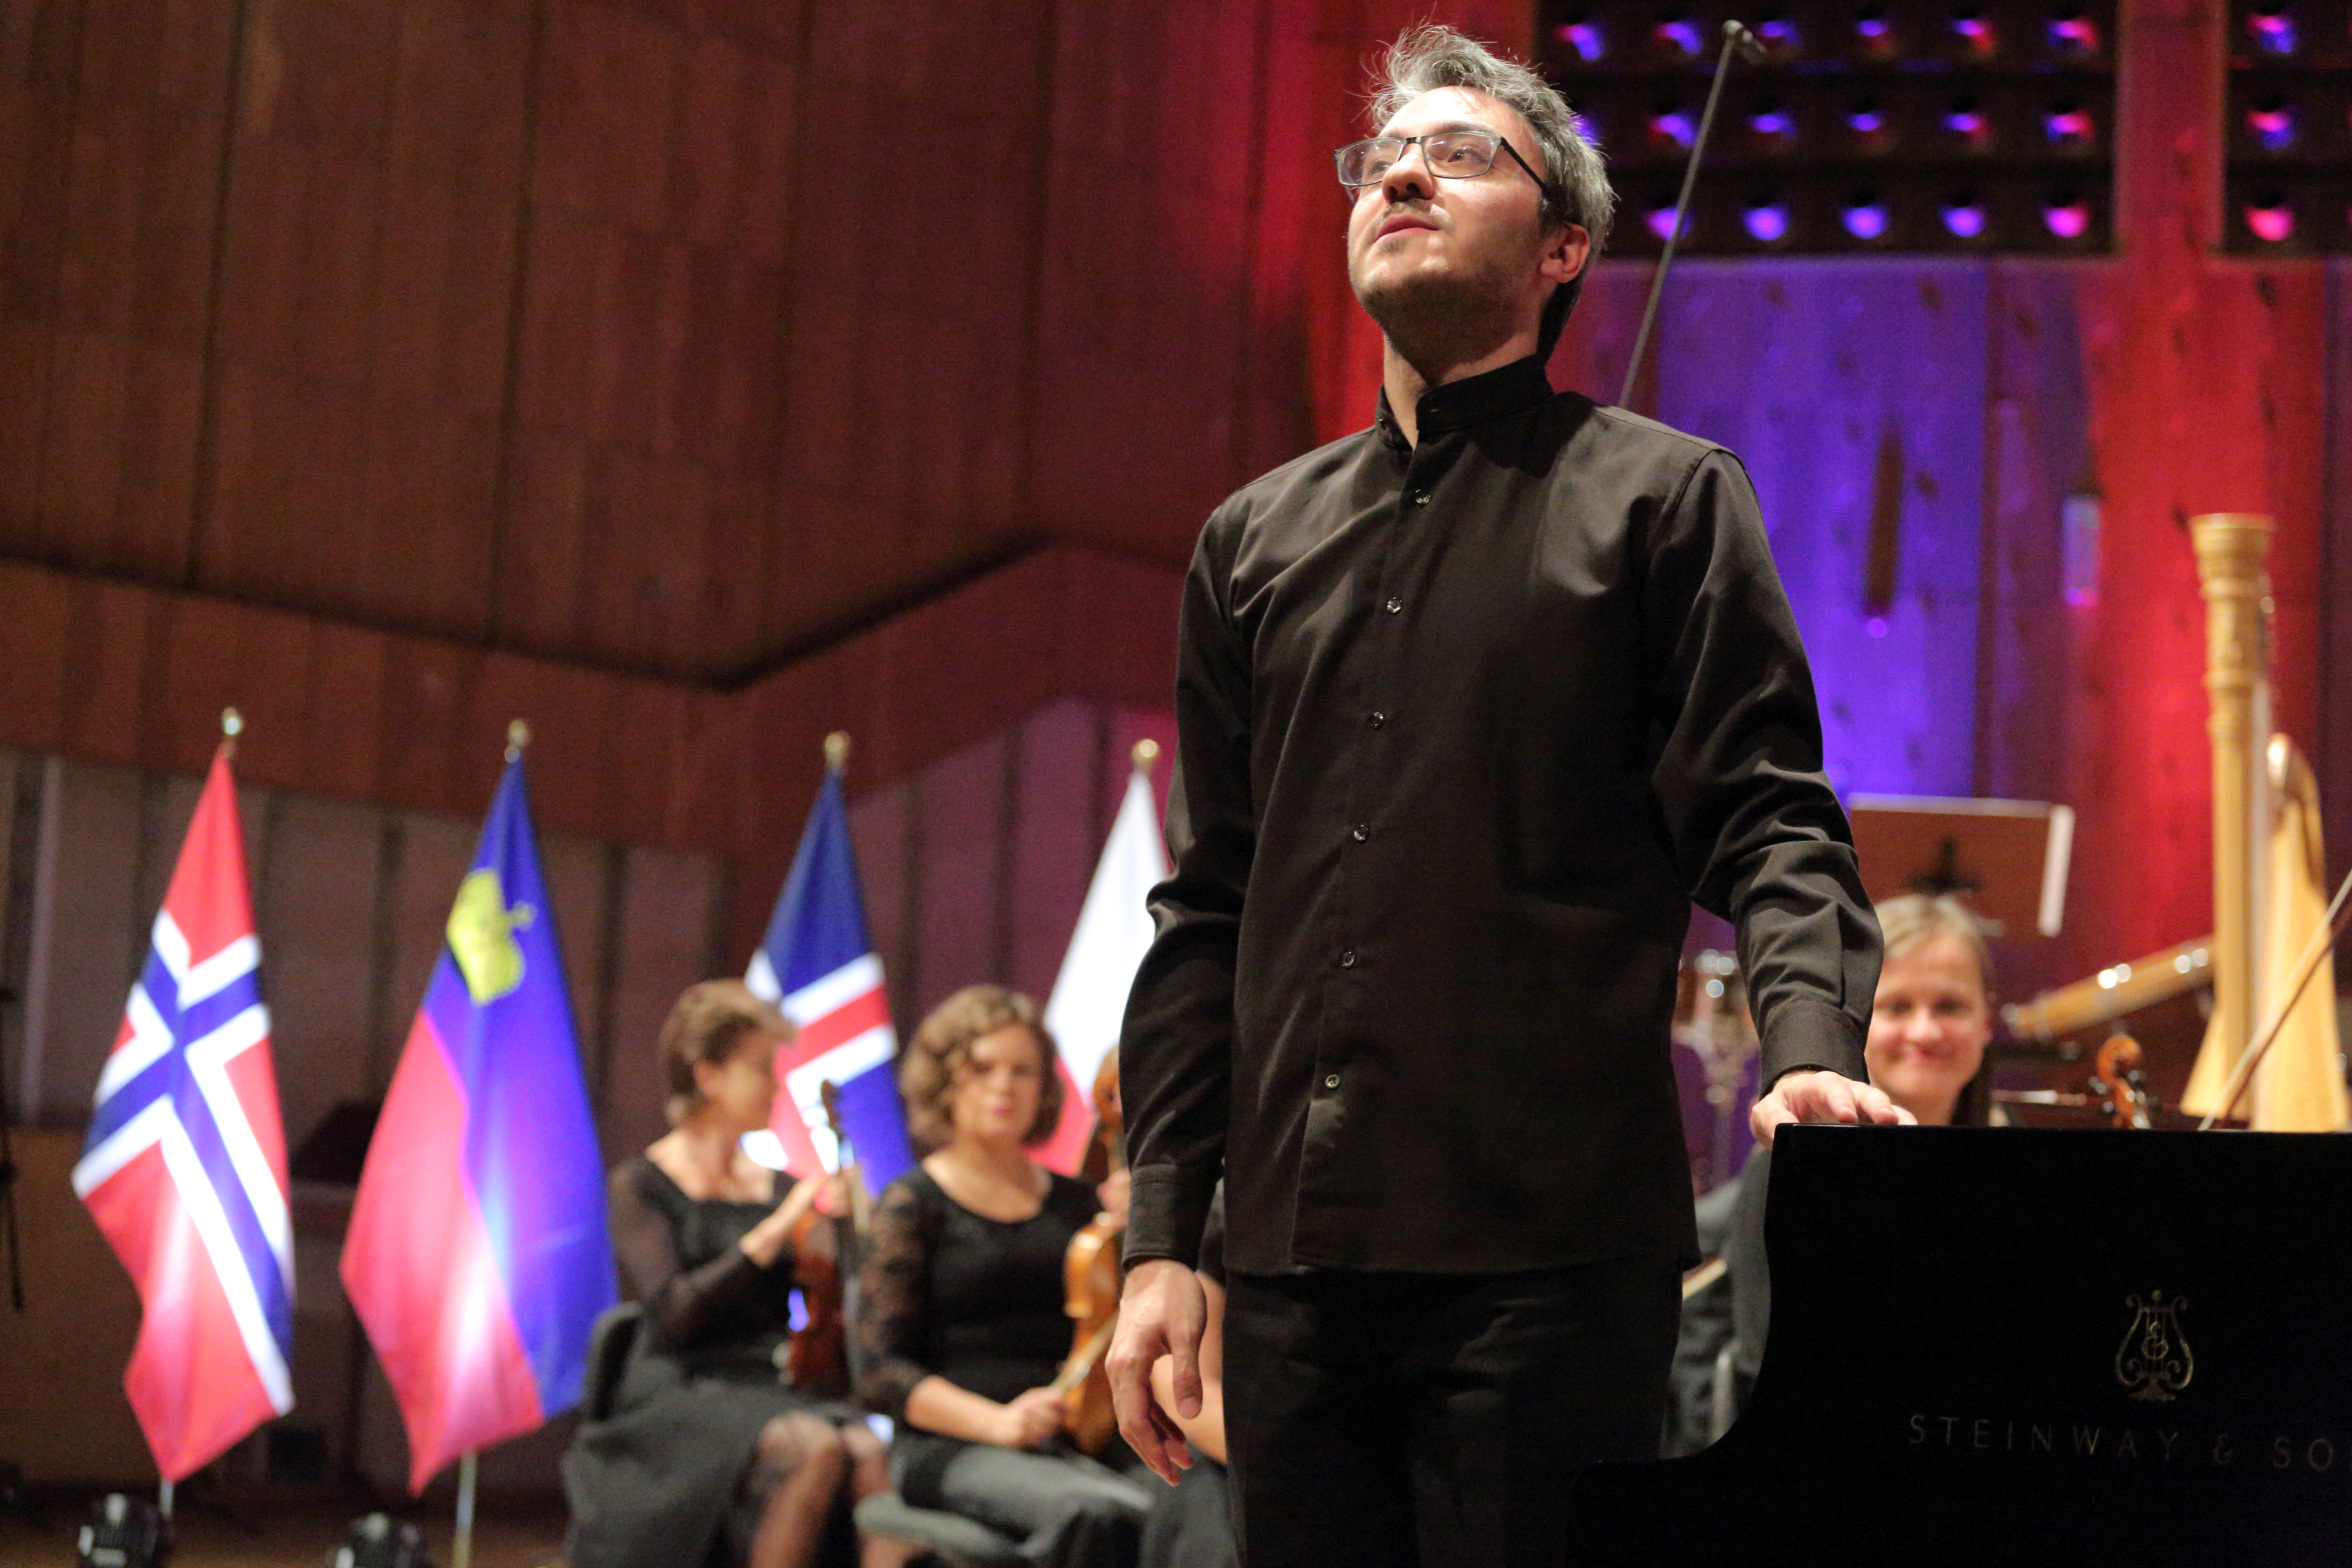 Alexander Gadjiev, pianista z Międzynarodowej Akademii Muzycznej w Liechtensteinie. Fot. Polskie Radio S.A.